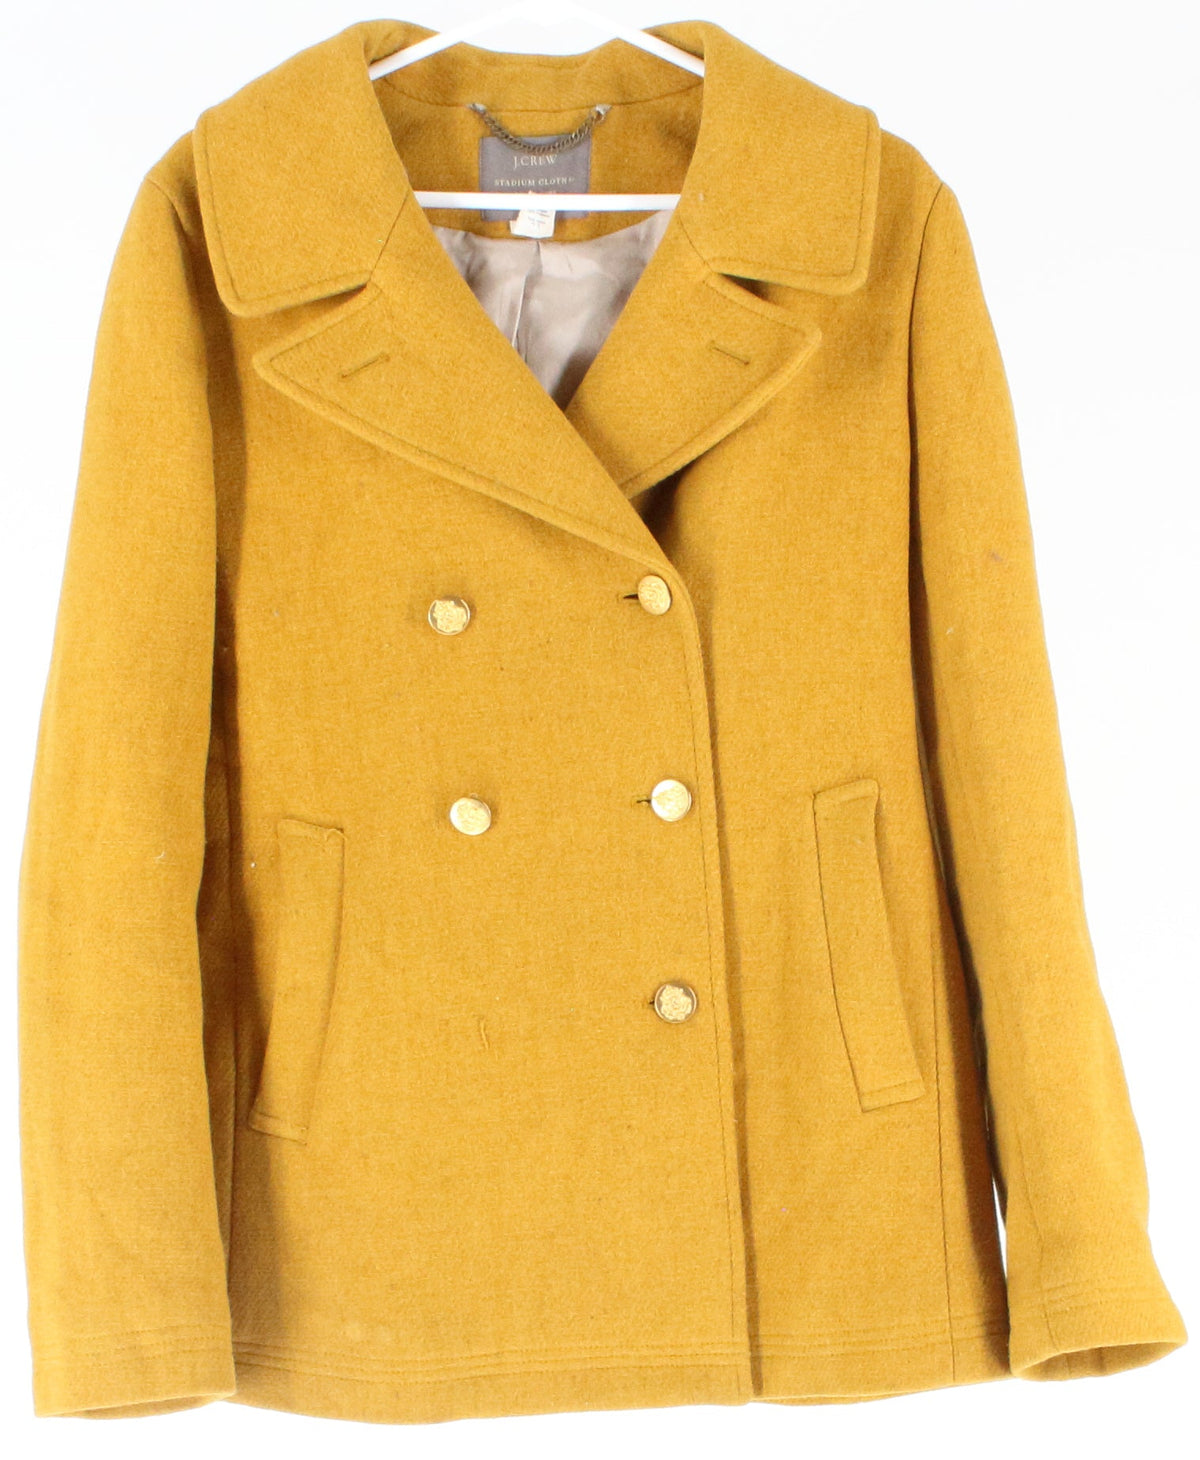 J Crew Mustard Yellow Women's Coat